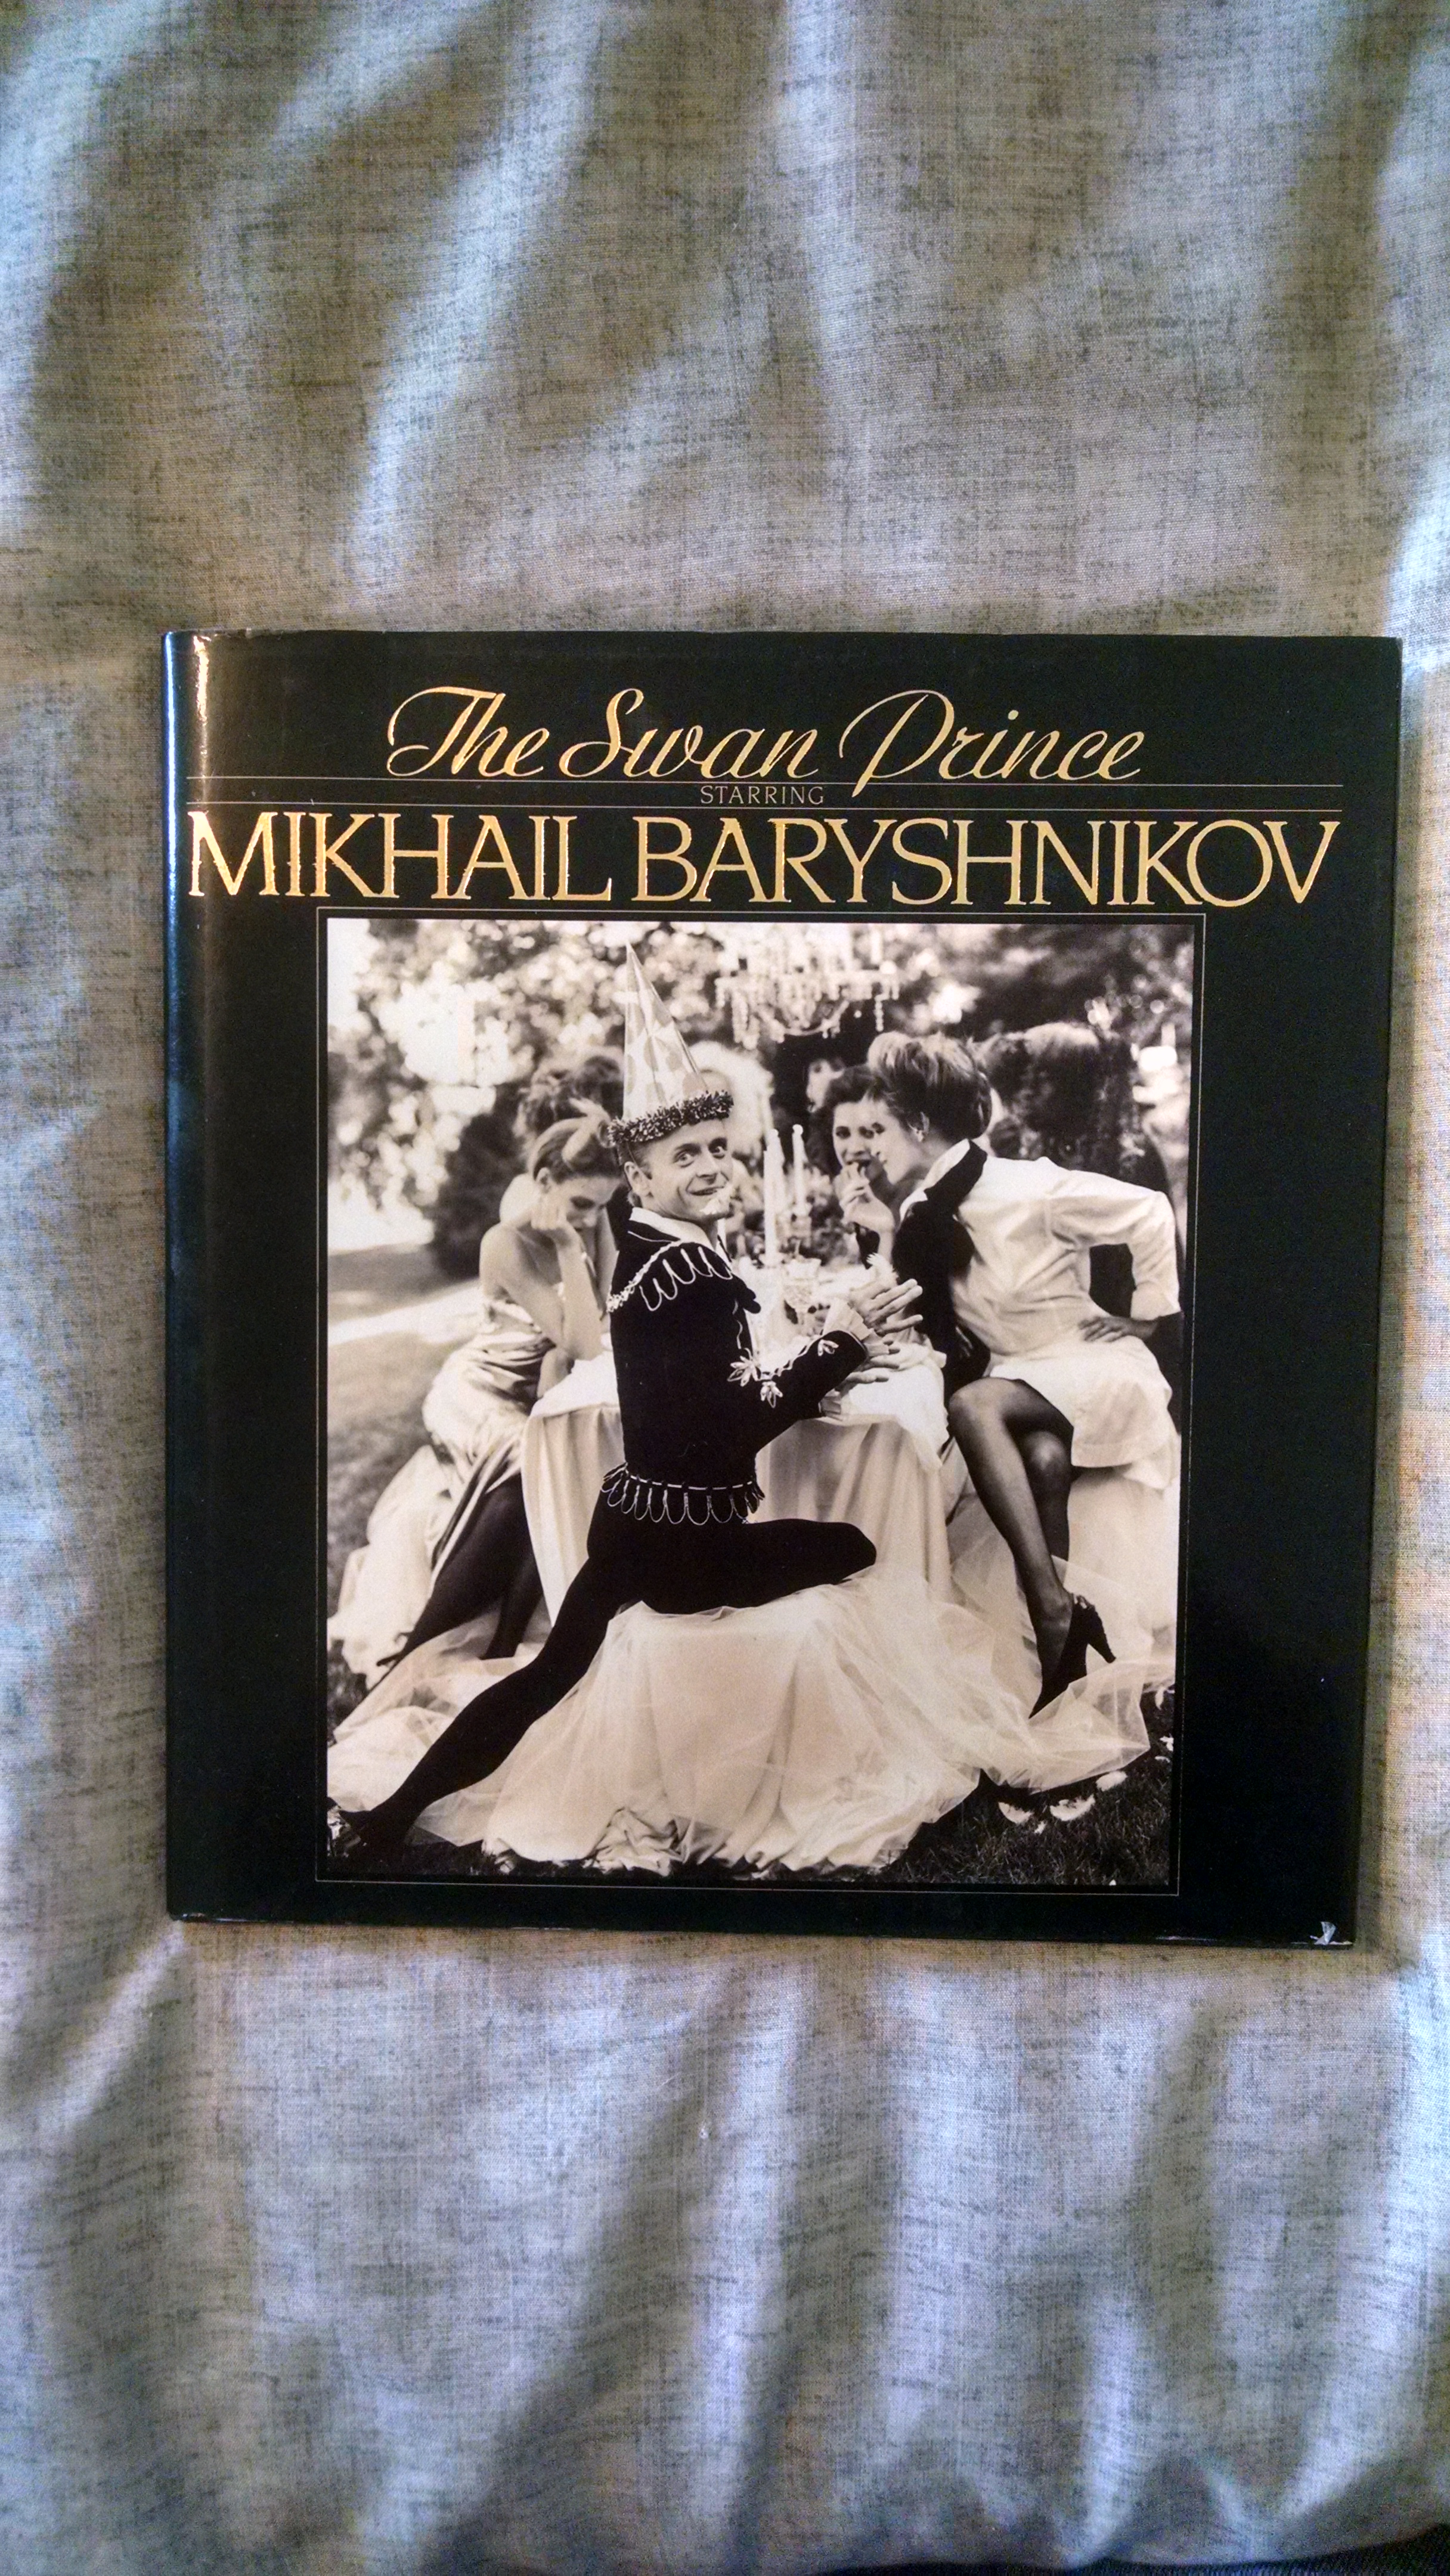 Image for THE SWAN PRONCE   STARRING MIKHAIL BERYSHNIKOV